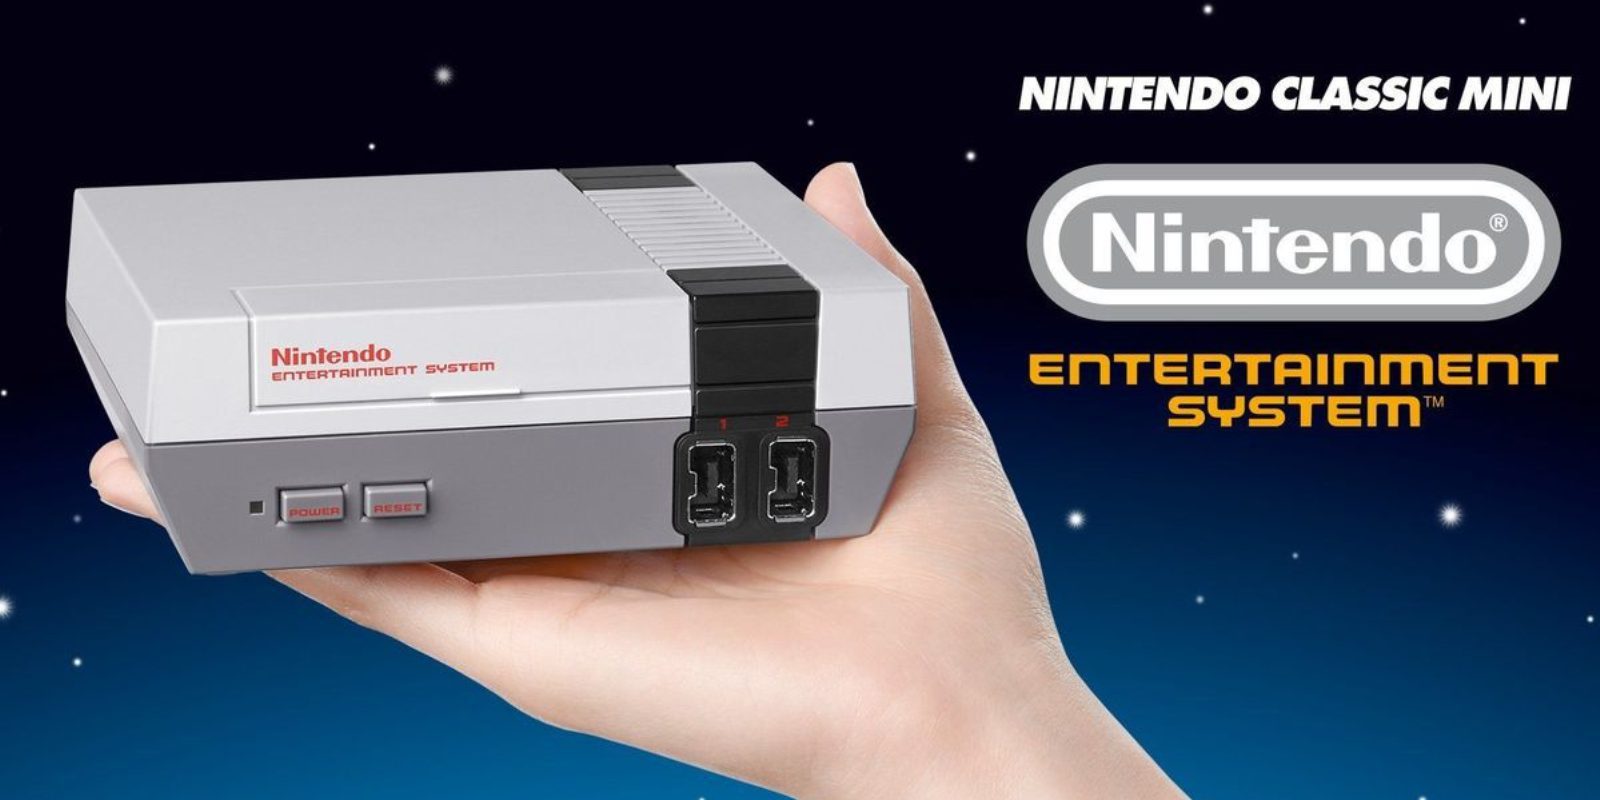 NES Classic Mini, puntos a favor y puntos en contra - Opinión